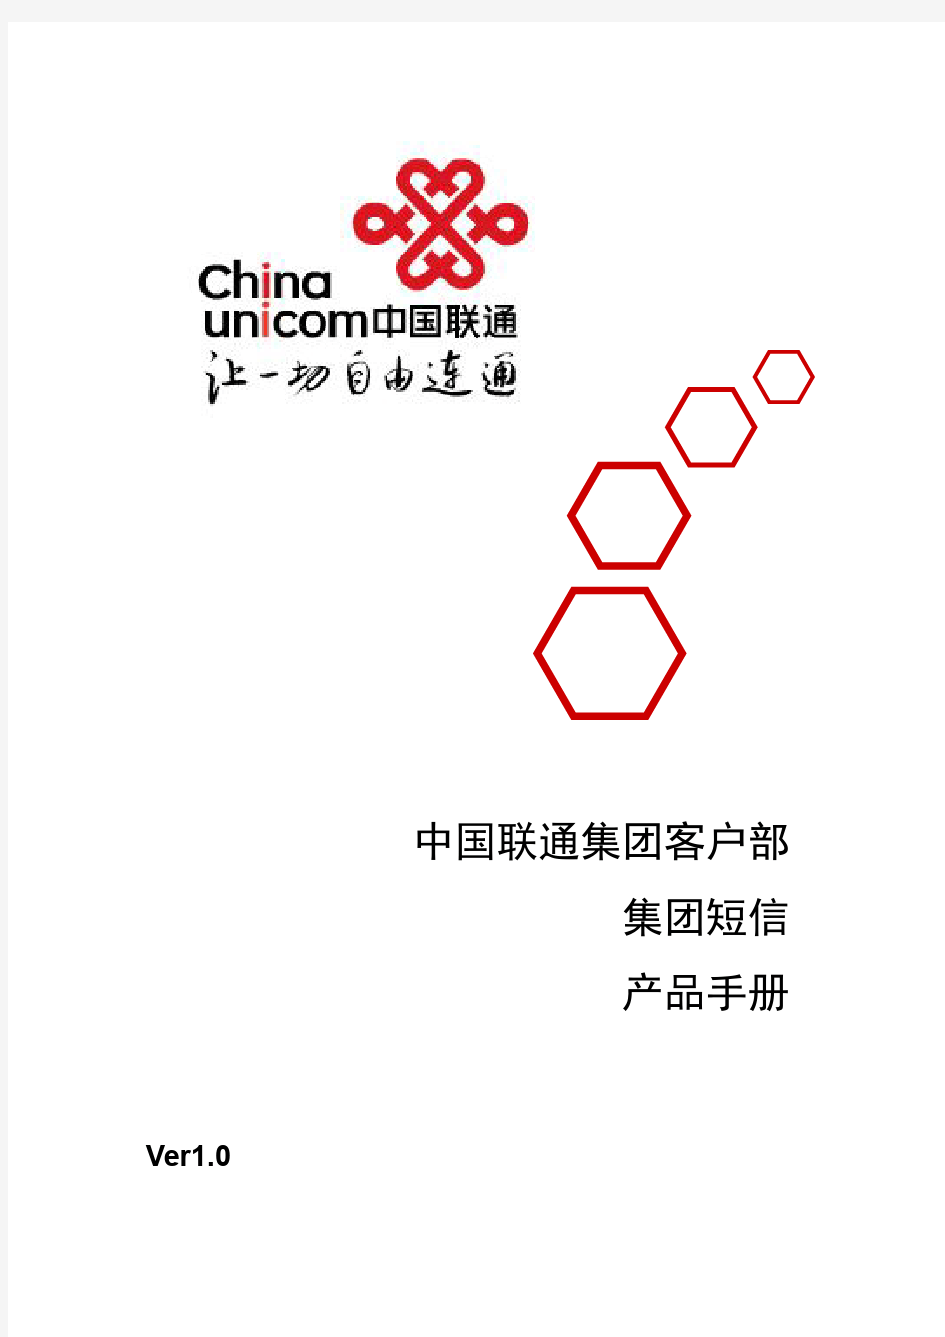 中国联通集团短信产品手册V1.0